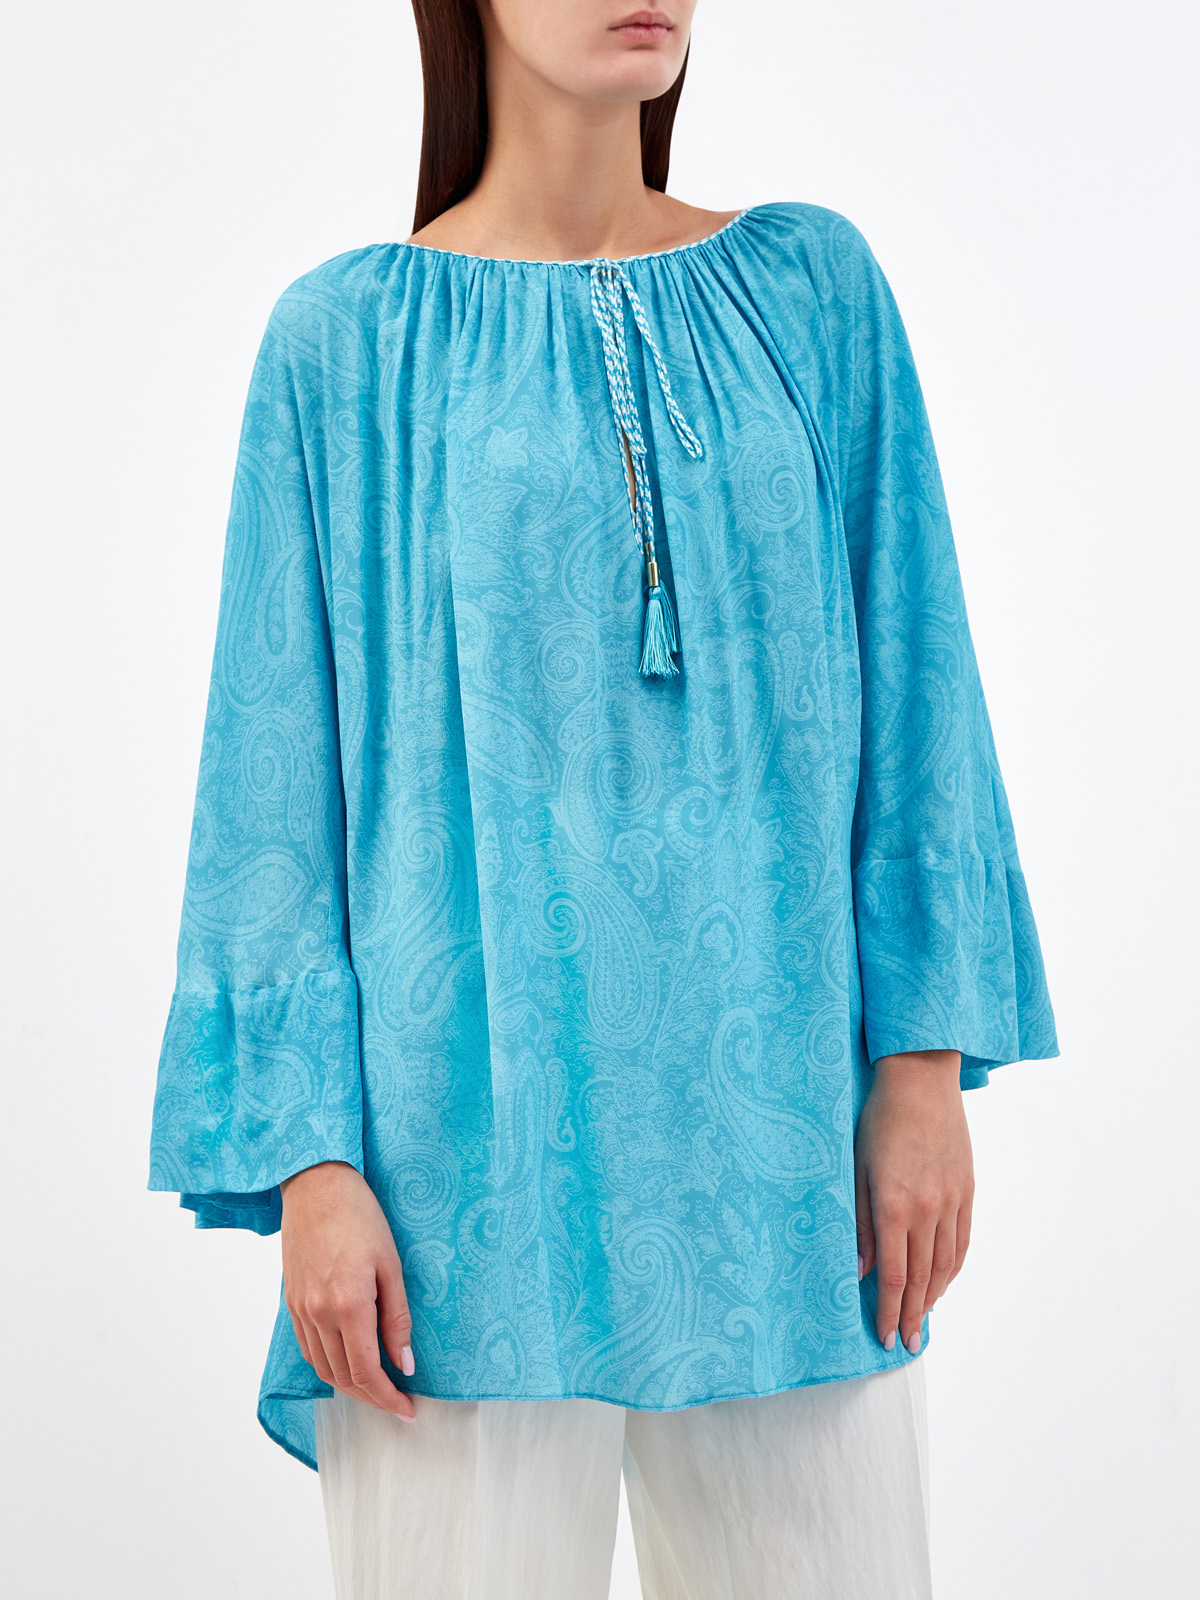 Легкая блуза с плетеными кисточками и принтом в тон ETRO, цвет голубой, размер 40;42;44;46;38 - фото 3